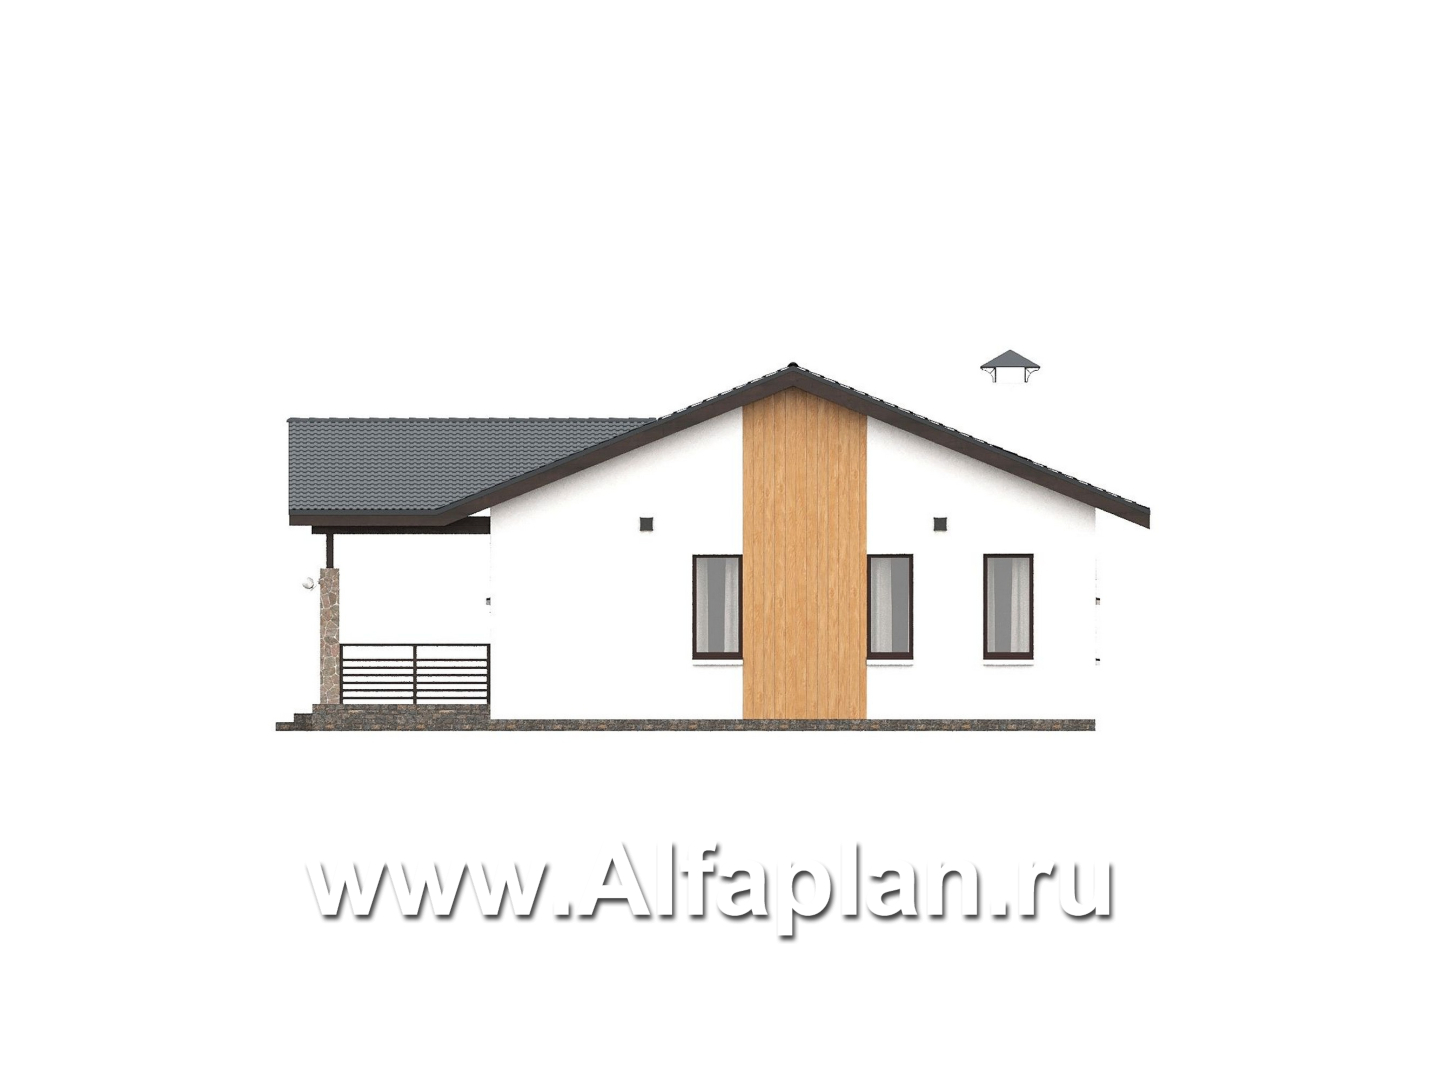 «Золотые поля» - проект одноэтажного дома, планировка мастер спальня и две детских, терраса со стороны входа - фасад дома